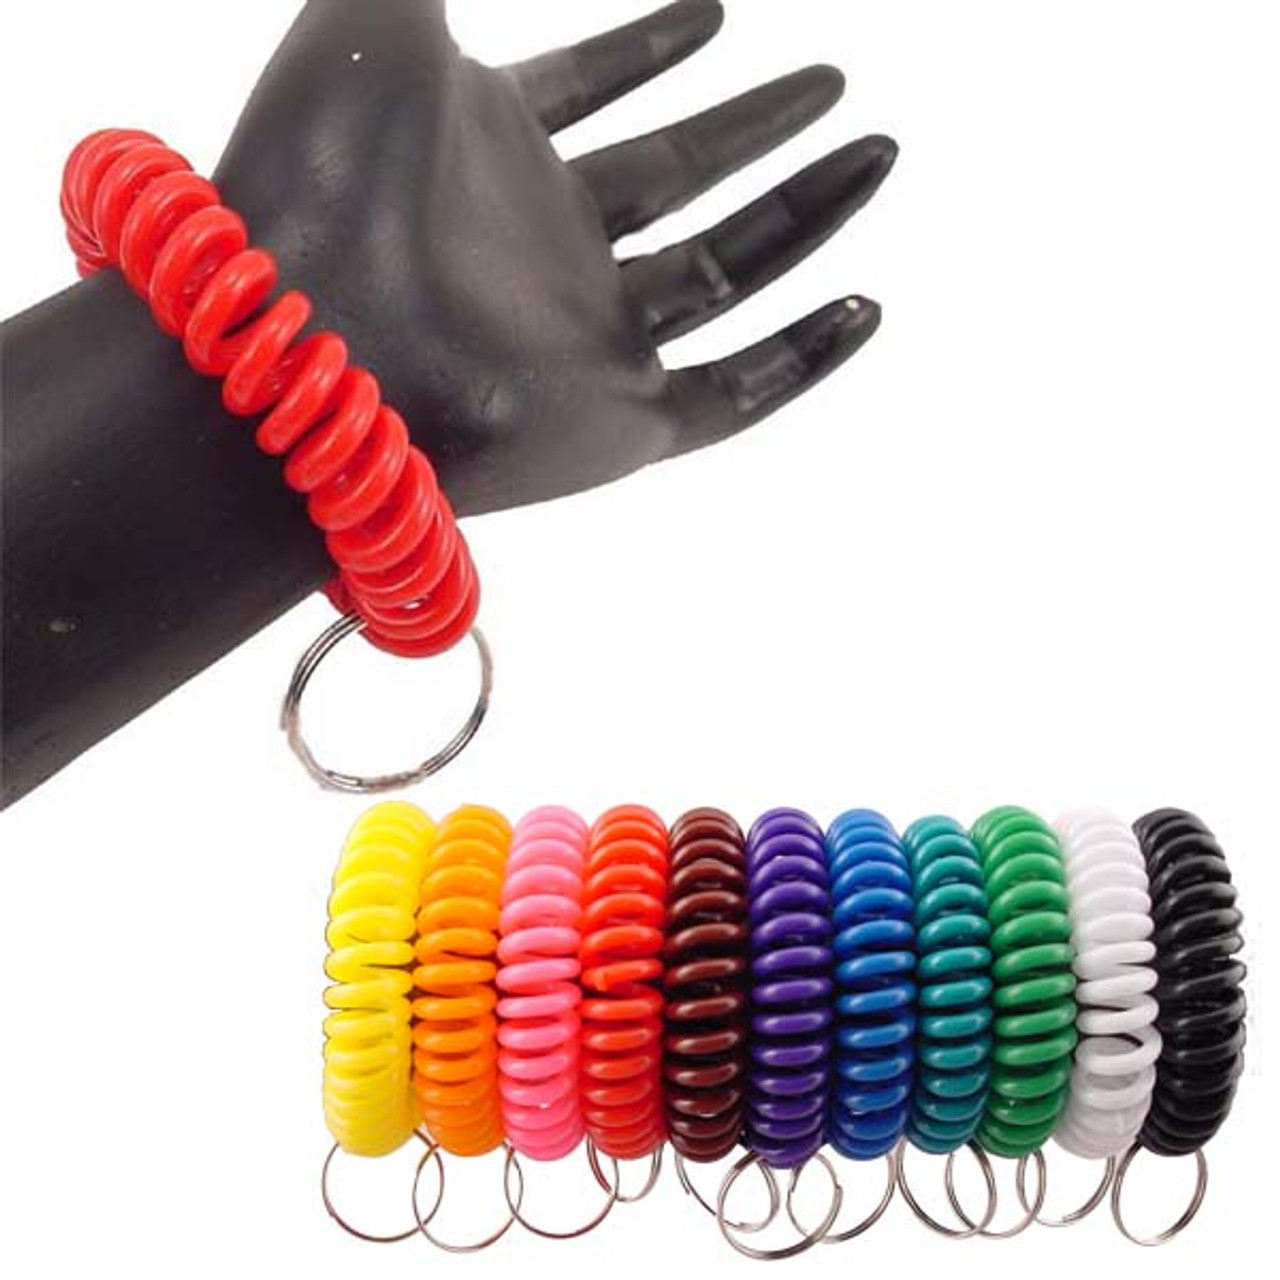 10 PCS Spring Coil Bracelet Wrist Coil Keychain Plastic Spiral Keychain  Coil Bracelet - Metal Key Ring Bracelet Holder Key Chain Colorful Spiral  Wrist